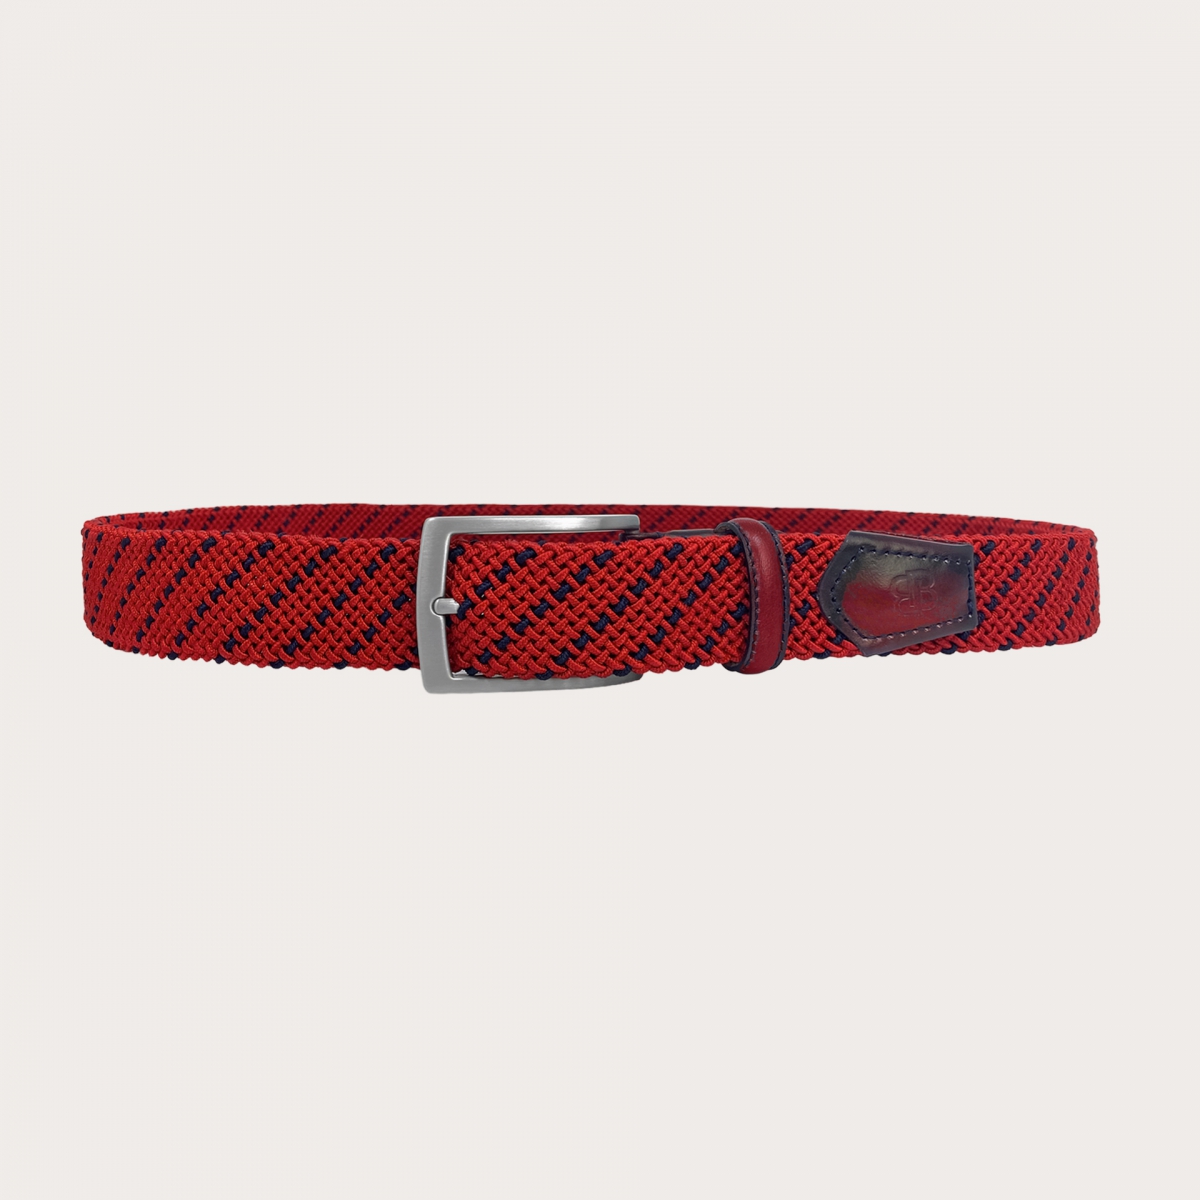 BRUCLE Cintura intrecciata elastica rossa e blu con pelle colorata e sfumata a mano